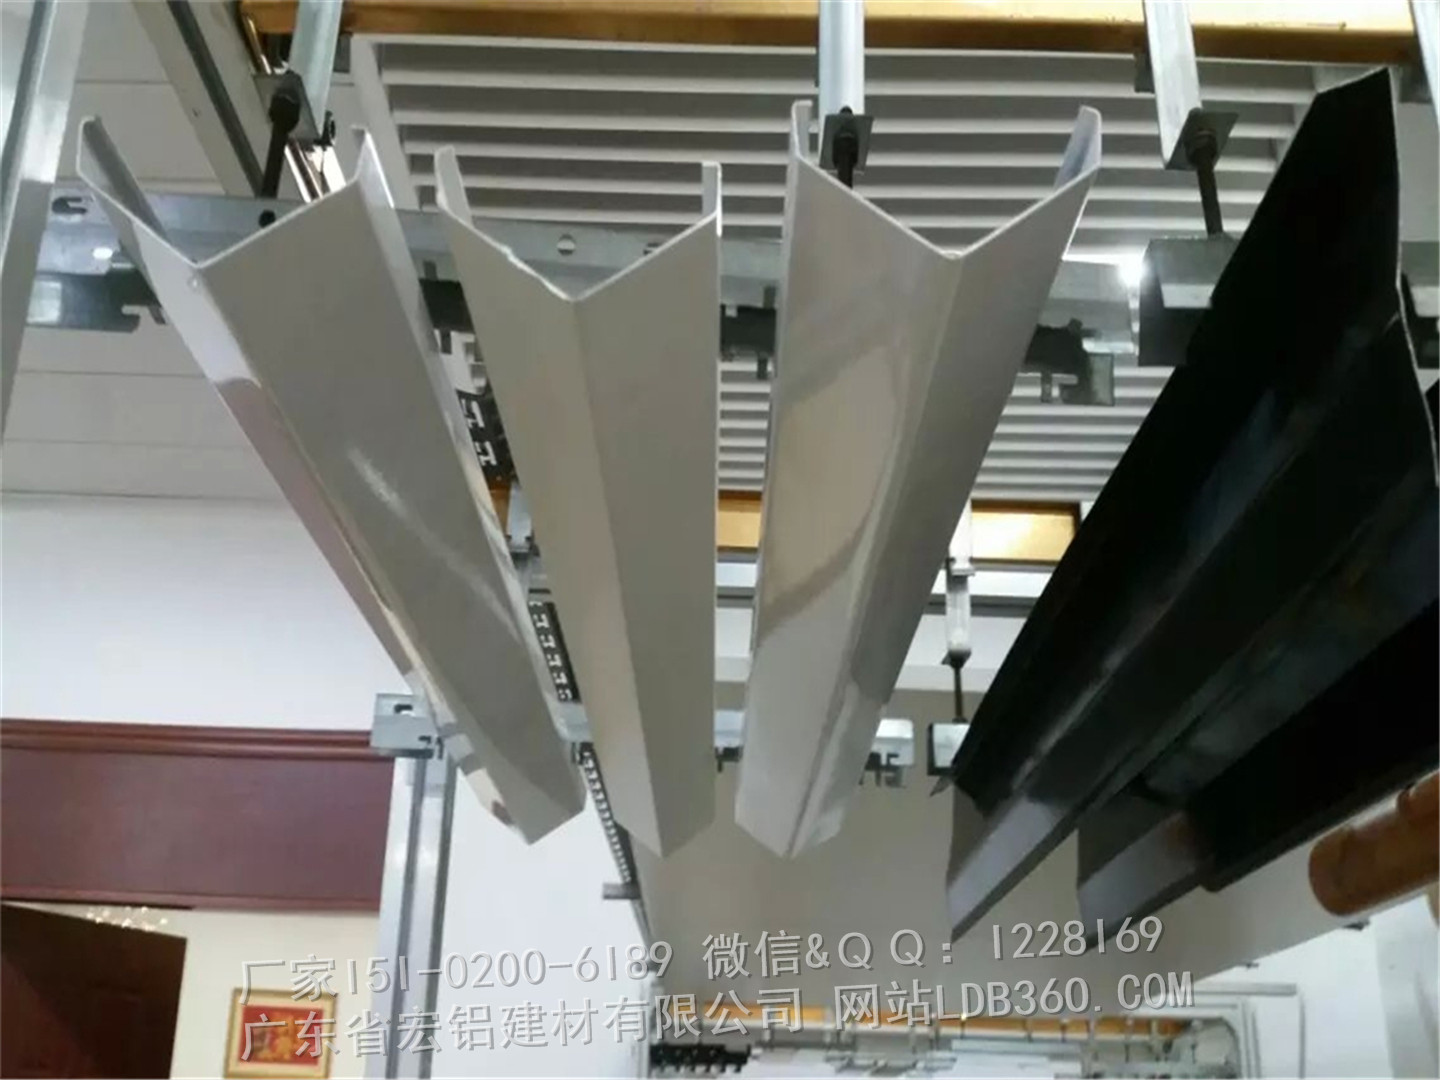 装饰铝挂片天花供应装饰铝挂片天花，厂家定制铝挂片吊顶天花，铝合金挂板材料